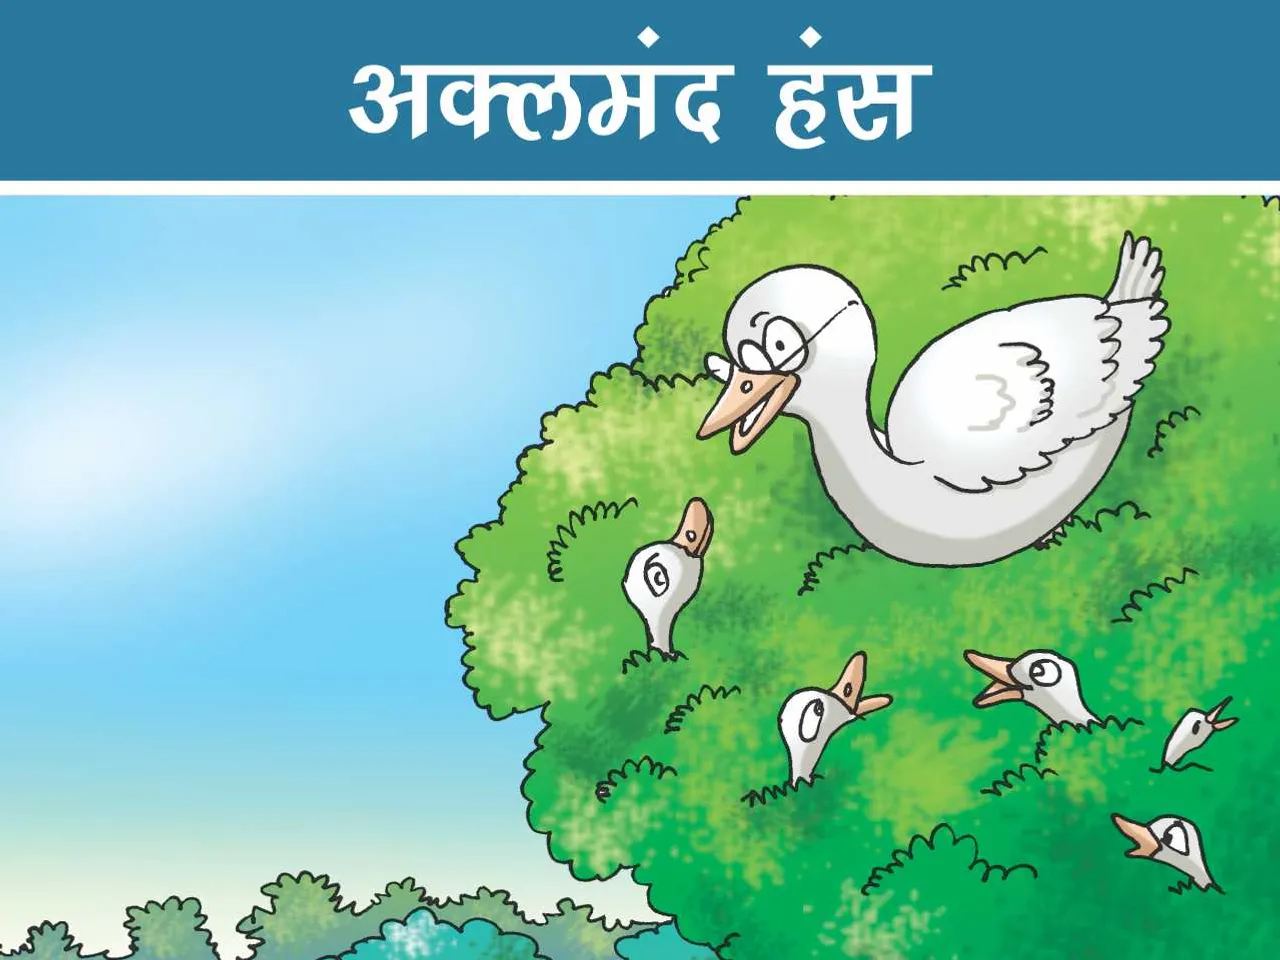 Swan on tree cartoon image